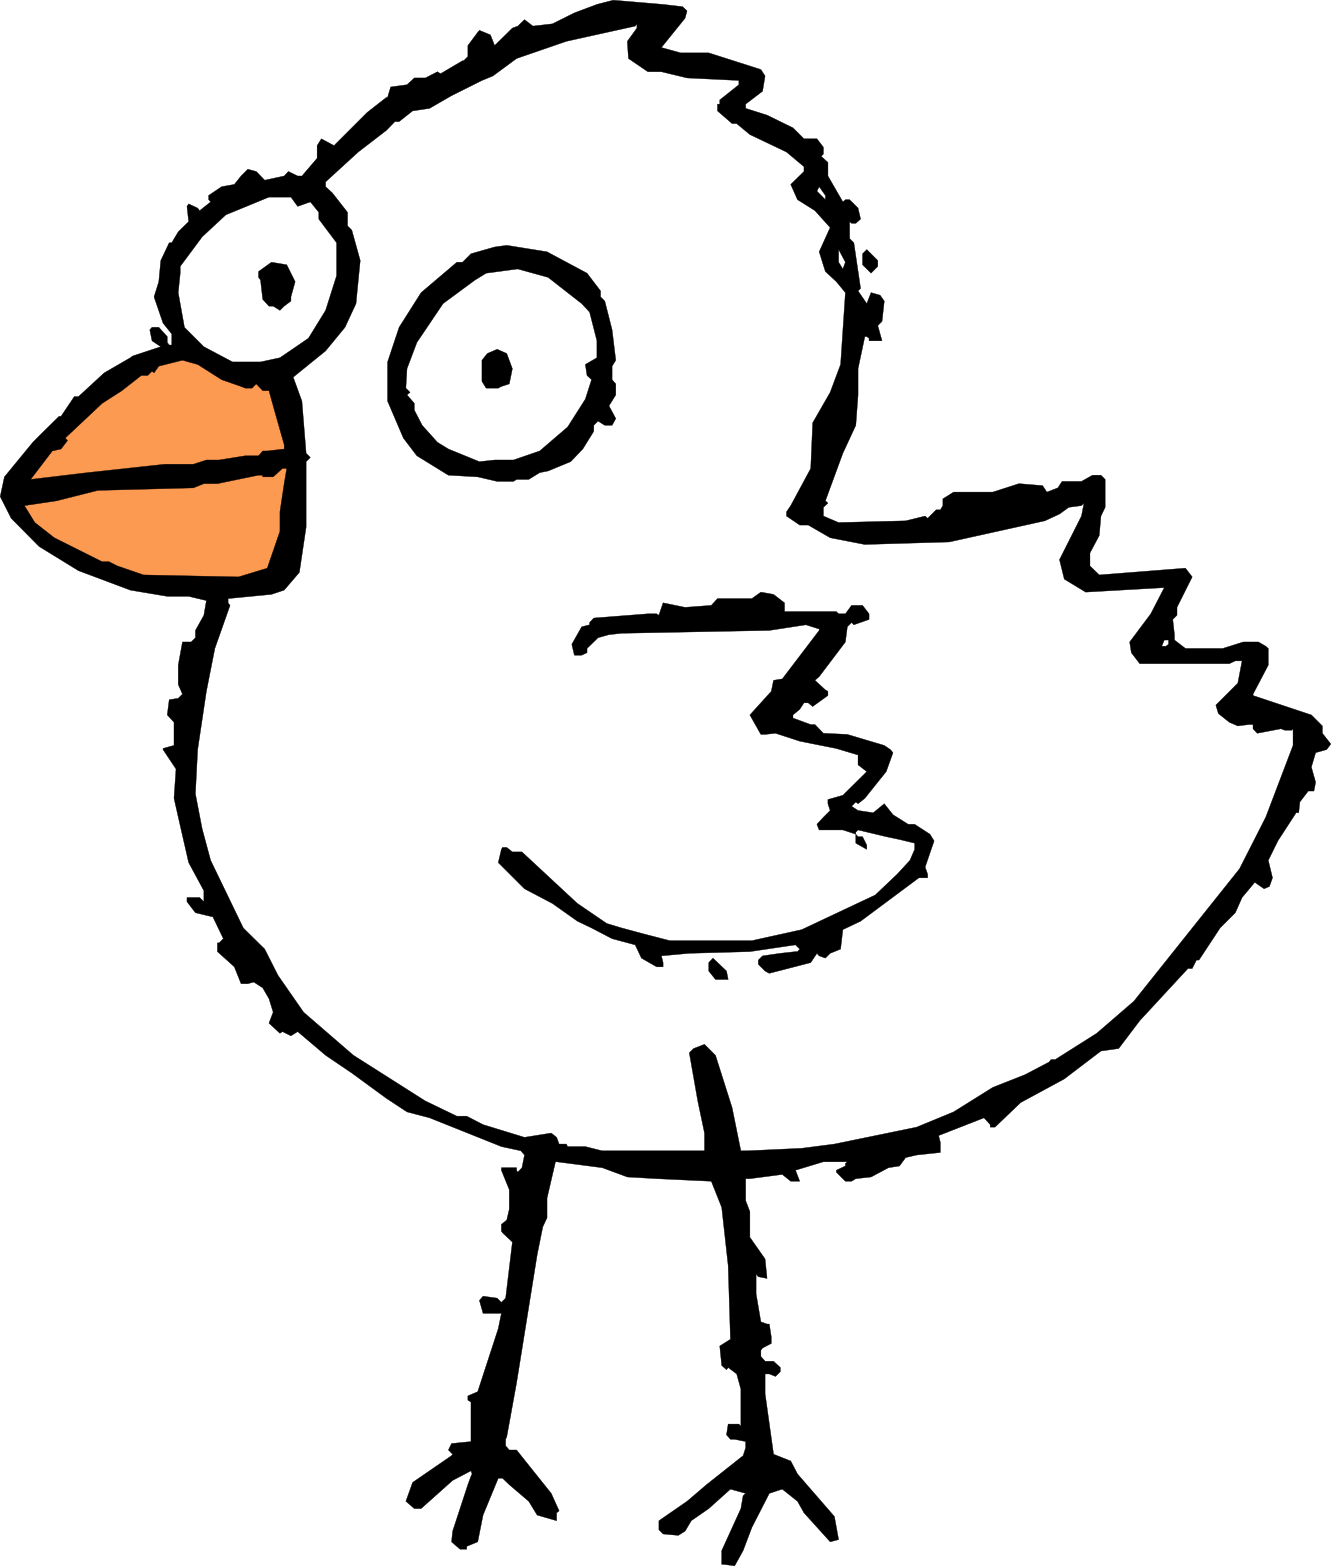 Free Cartoon Bird Tattoo, Download Free Clip Art, Free Clip.